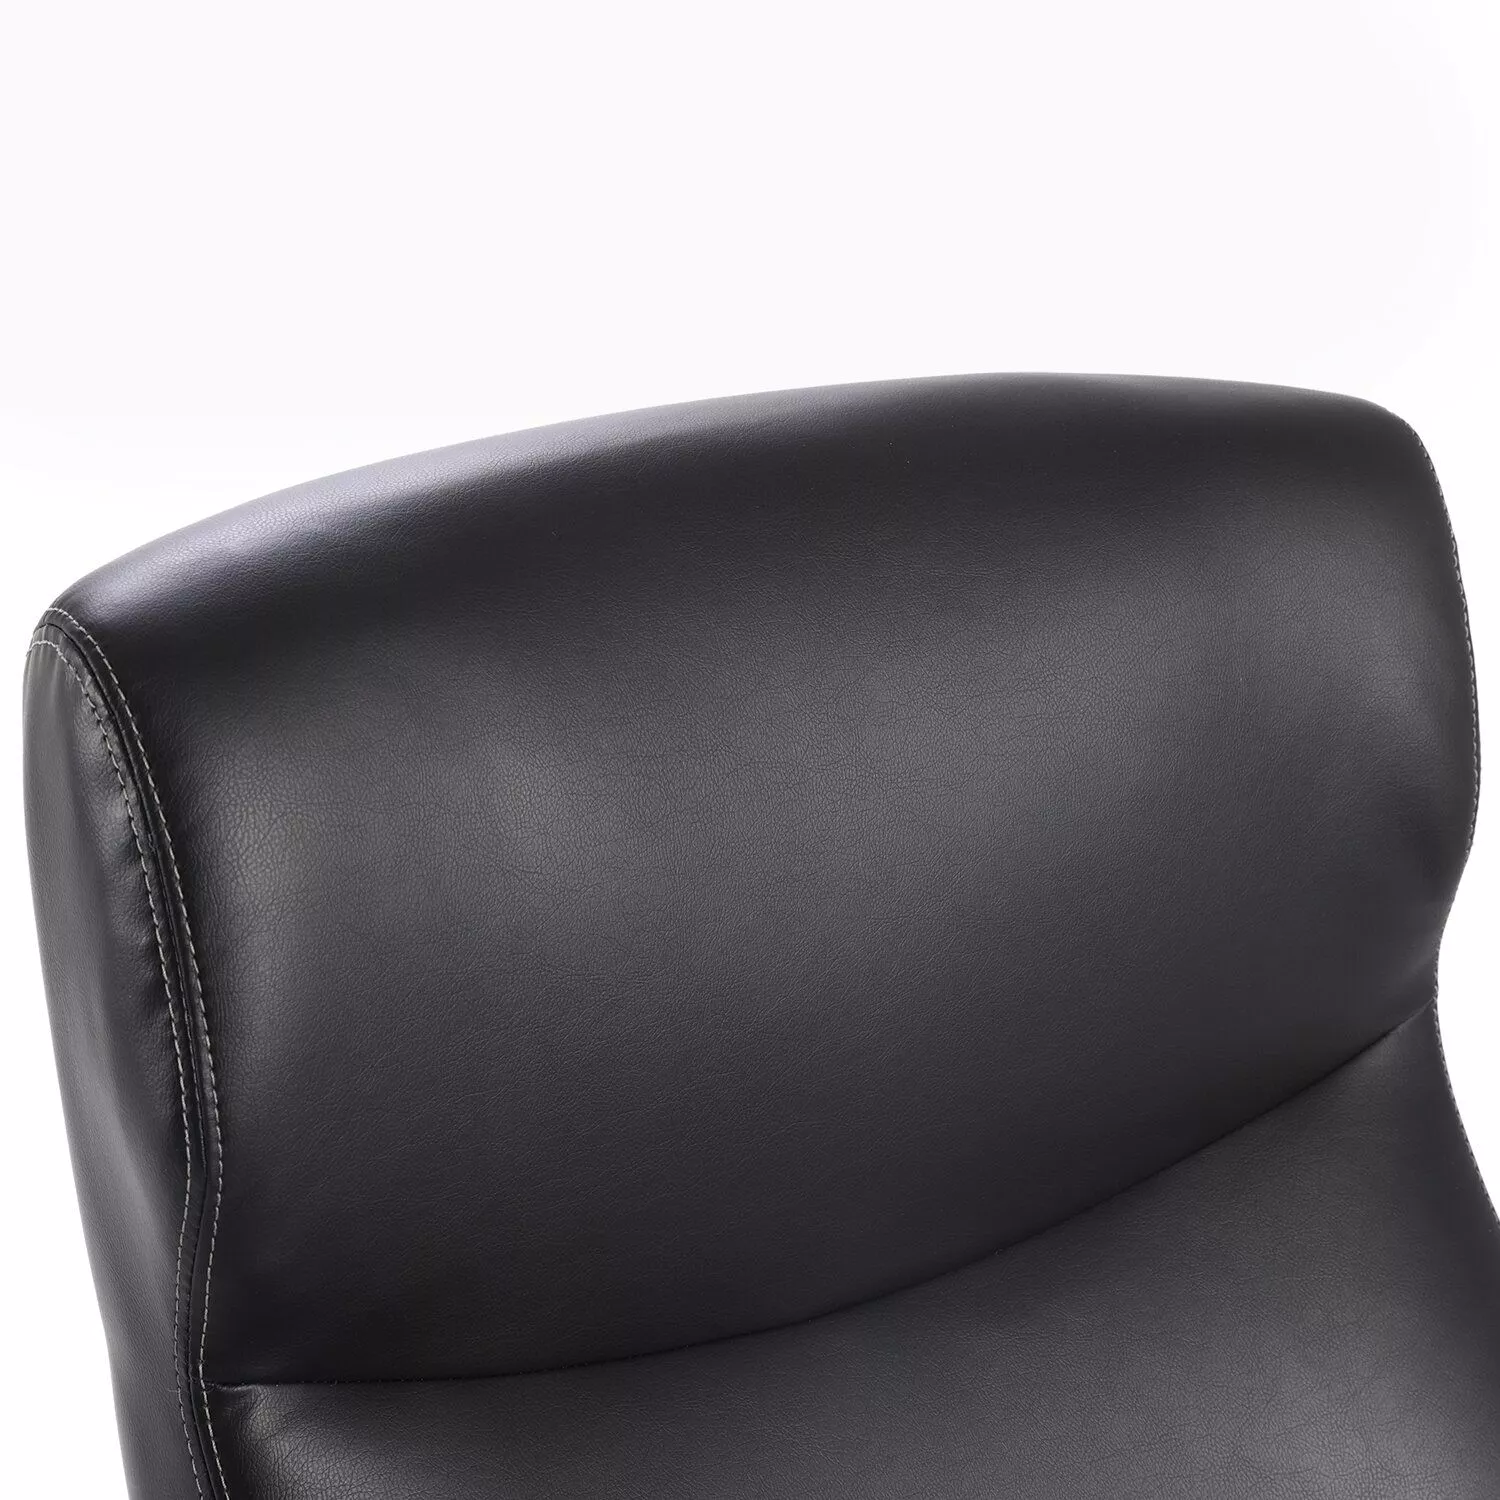 Кресло офисное для руководителя BRABIX PREMIUM Total HD-006 Черный 531933